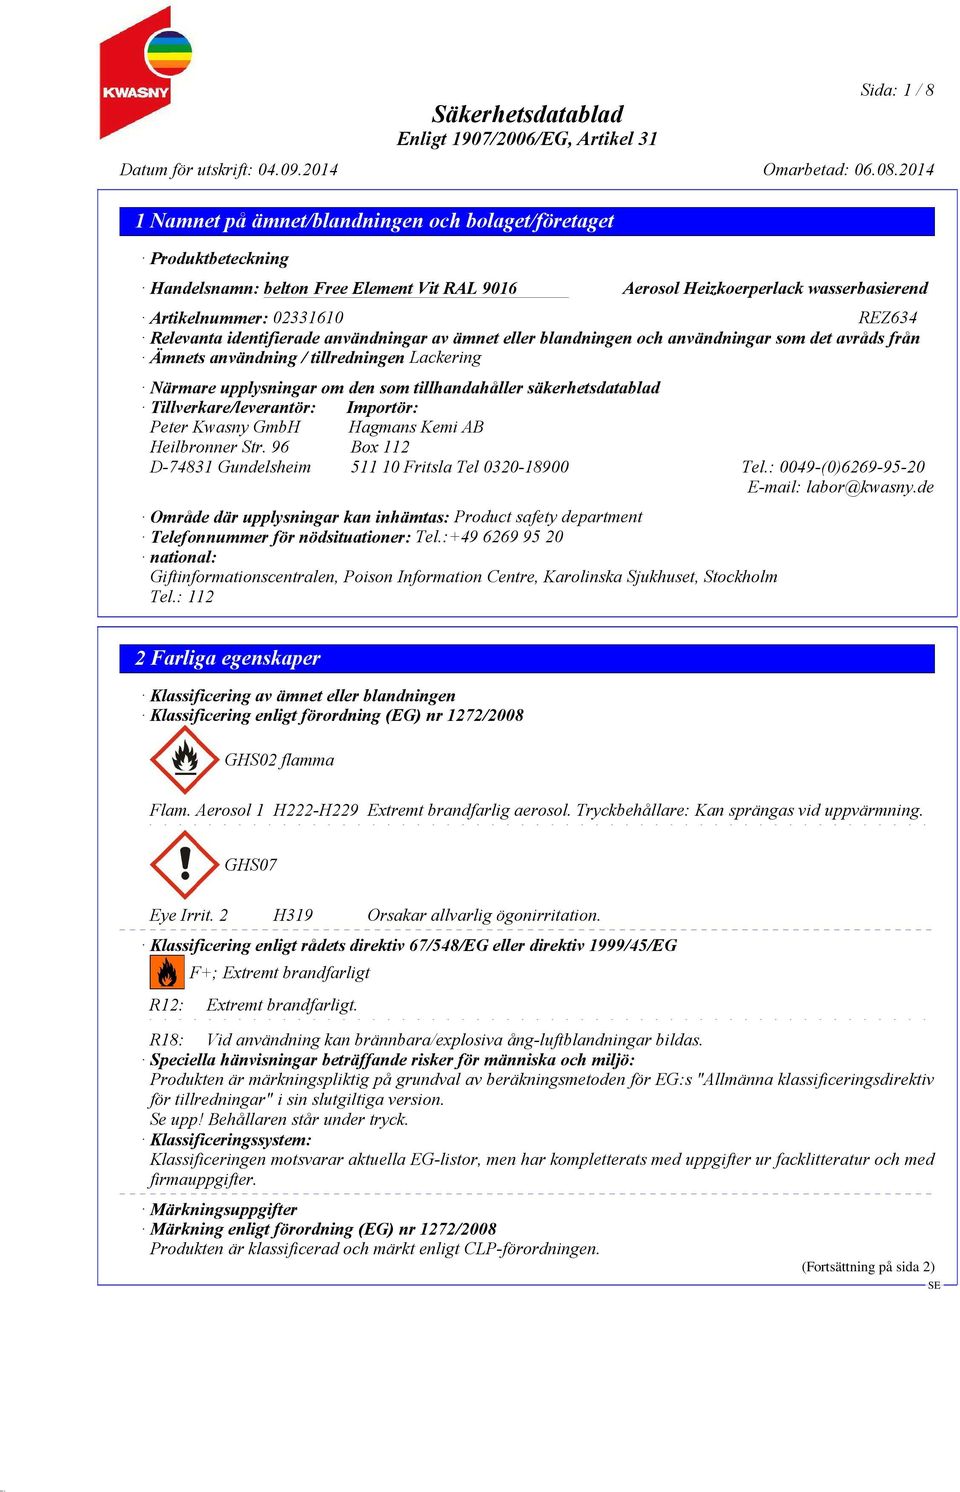 Heilbronner Str. 96 Box 112 D-74831 Gundelsheim 511 10 Fritsla Tel 0320-18900 Tel.: 0049-(0)6269-95-20 E-mail: labor@kwasny.